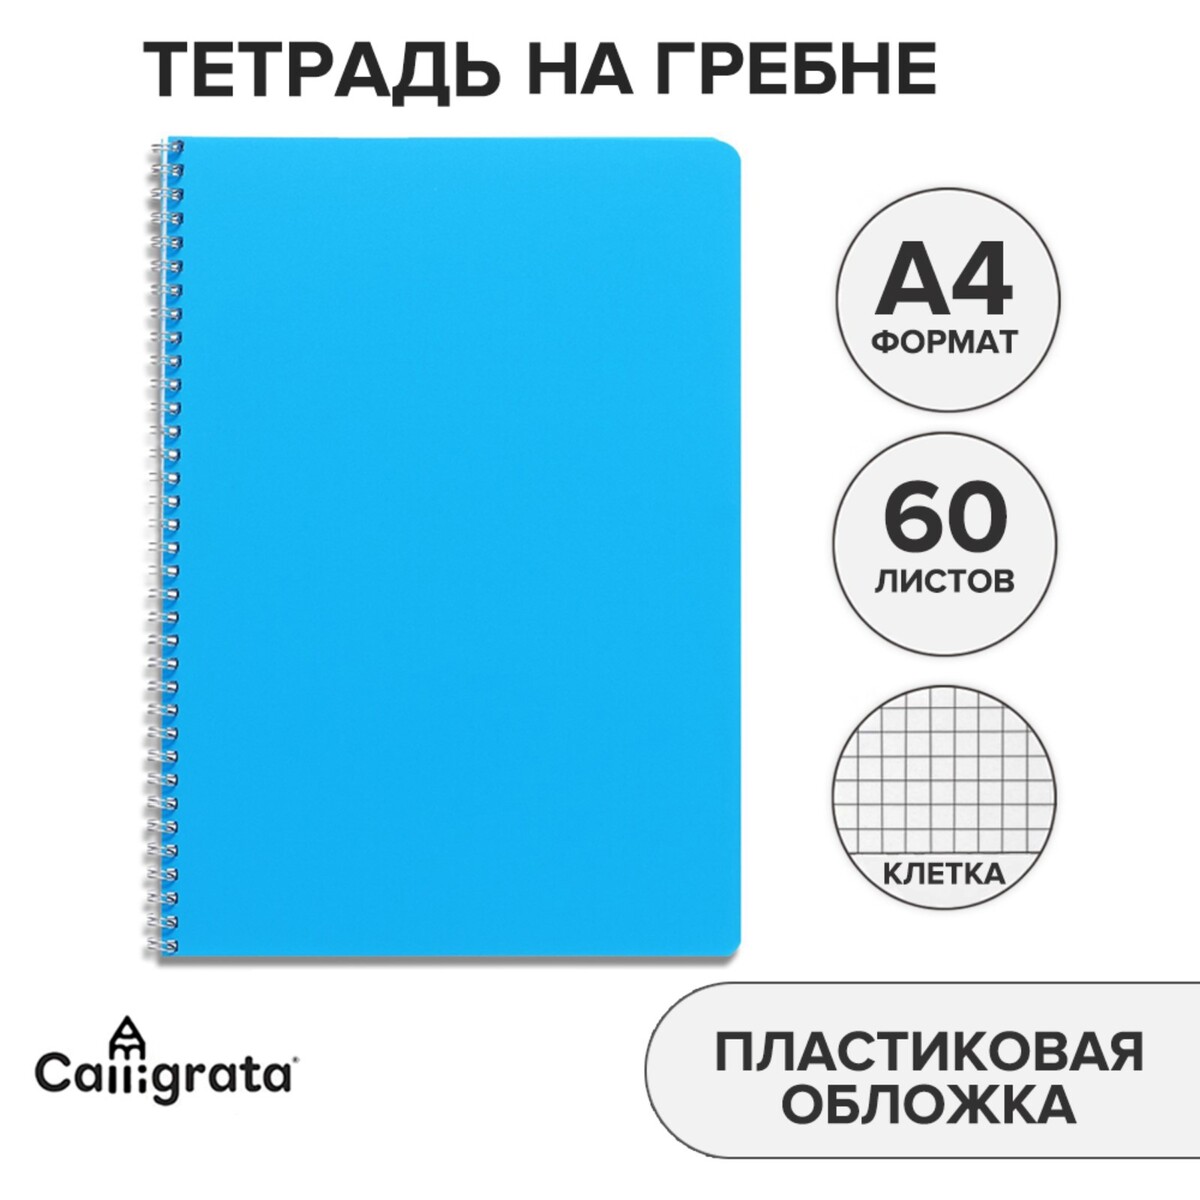 Тетрадь на гребне a4 60 листов в клетку calligrata голубая, пластиковая обложка, блок офсет